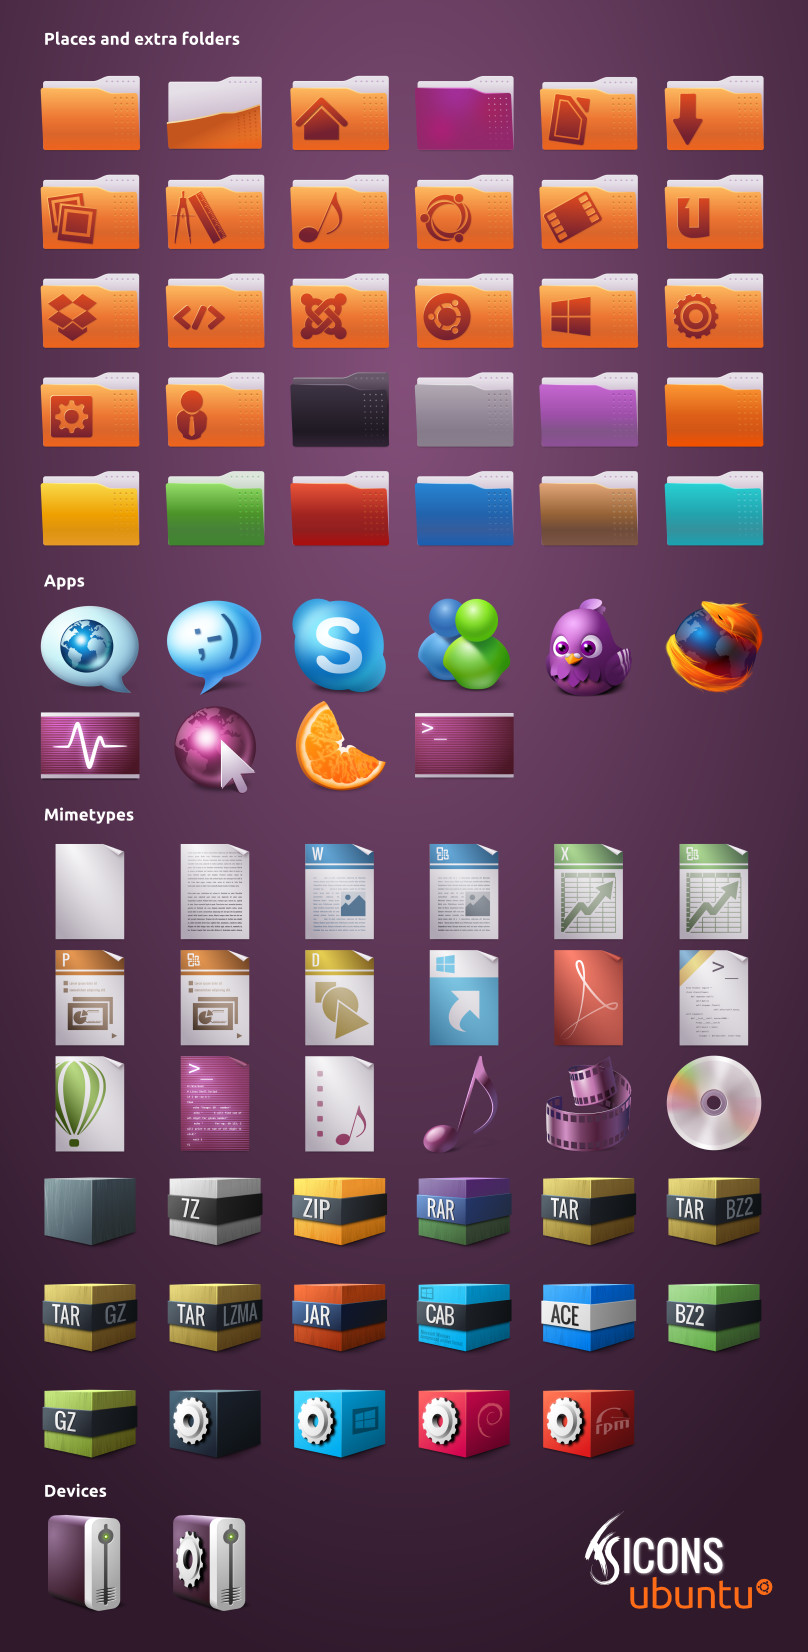 FS Icons Ubuntu